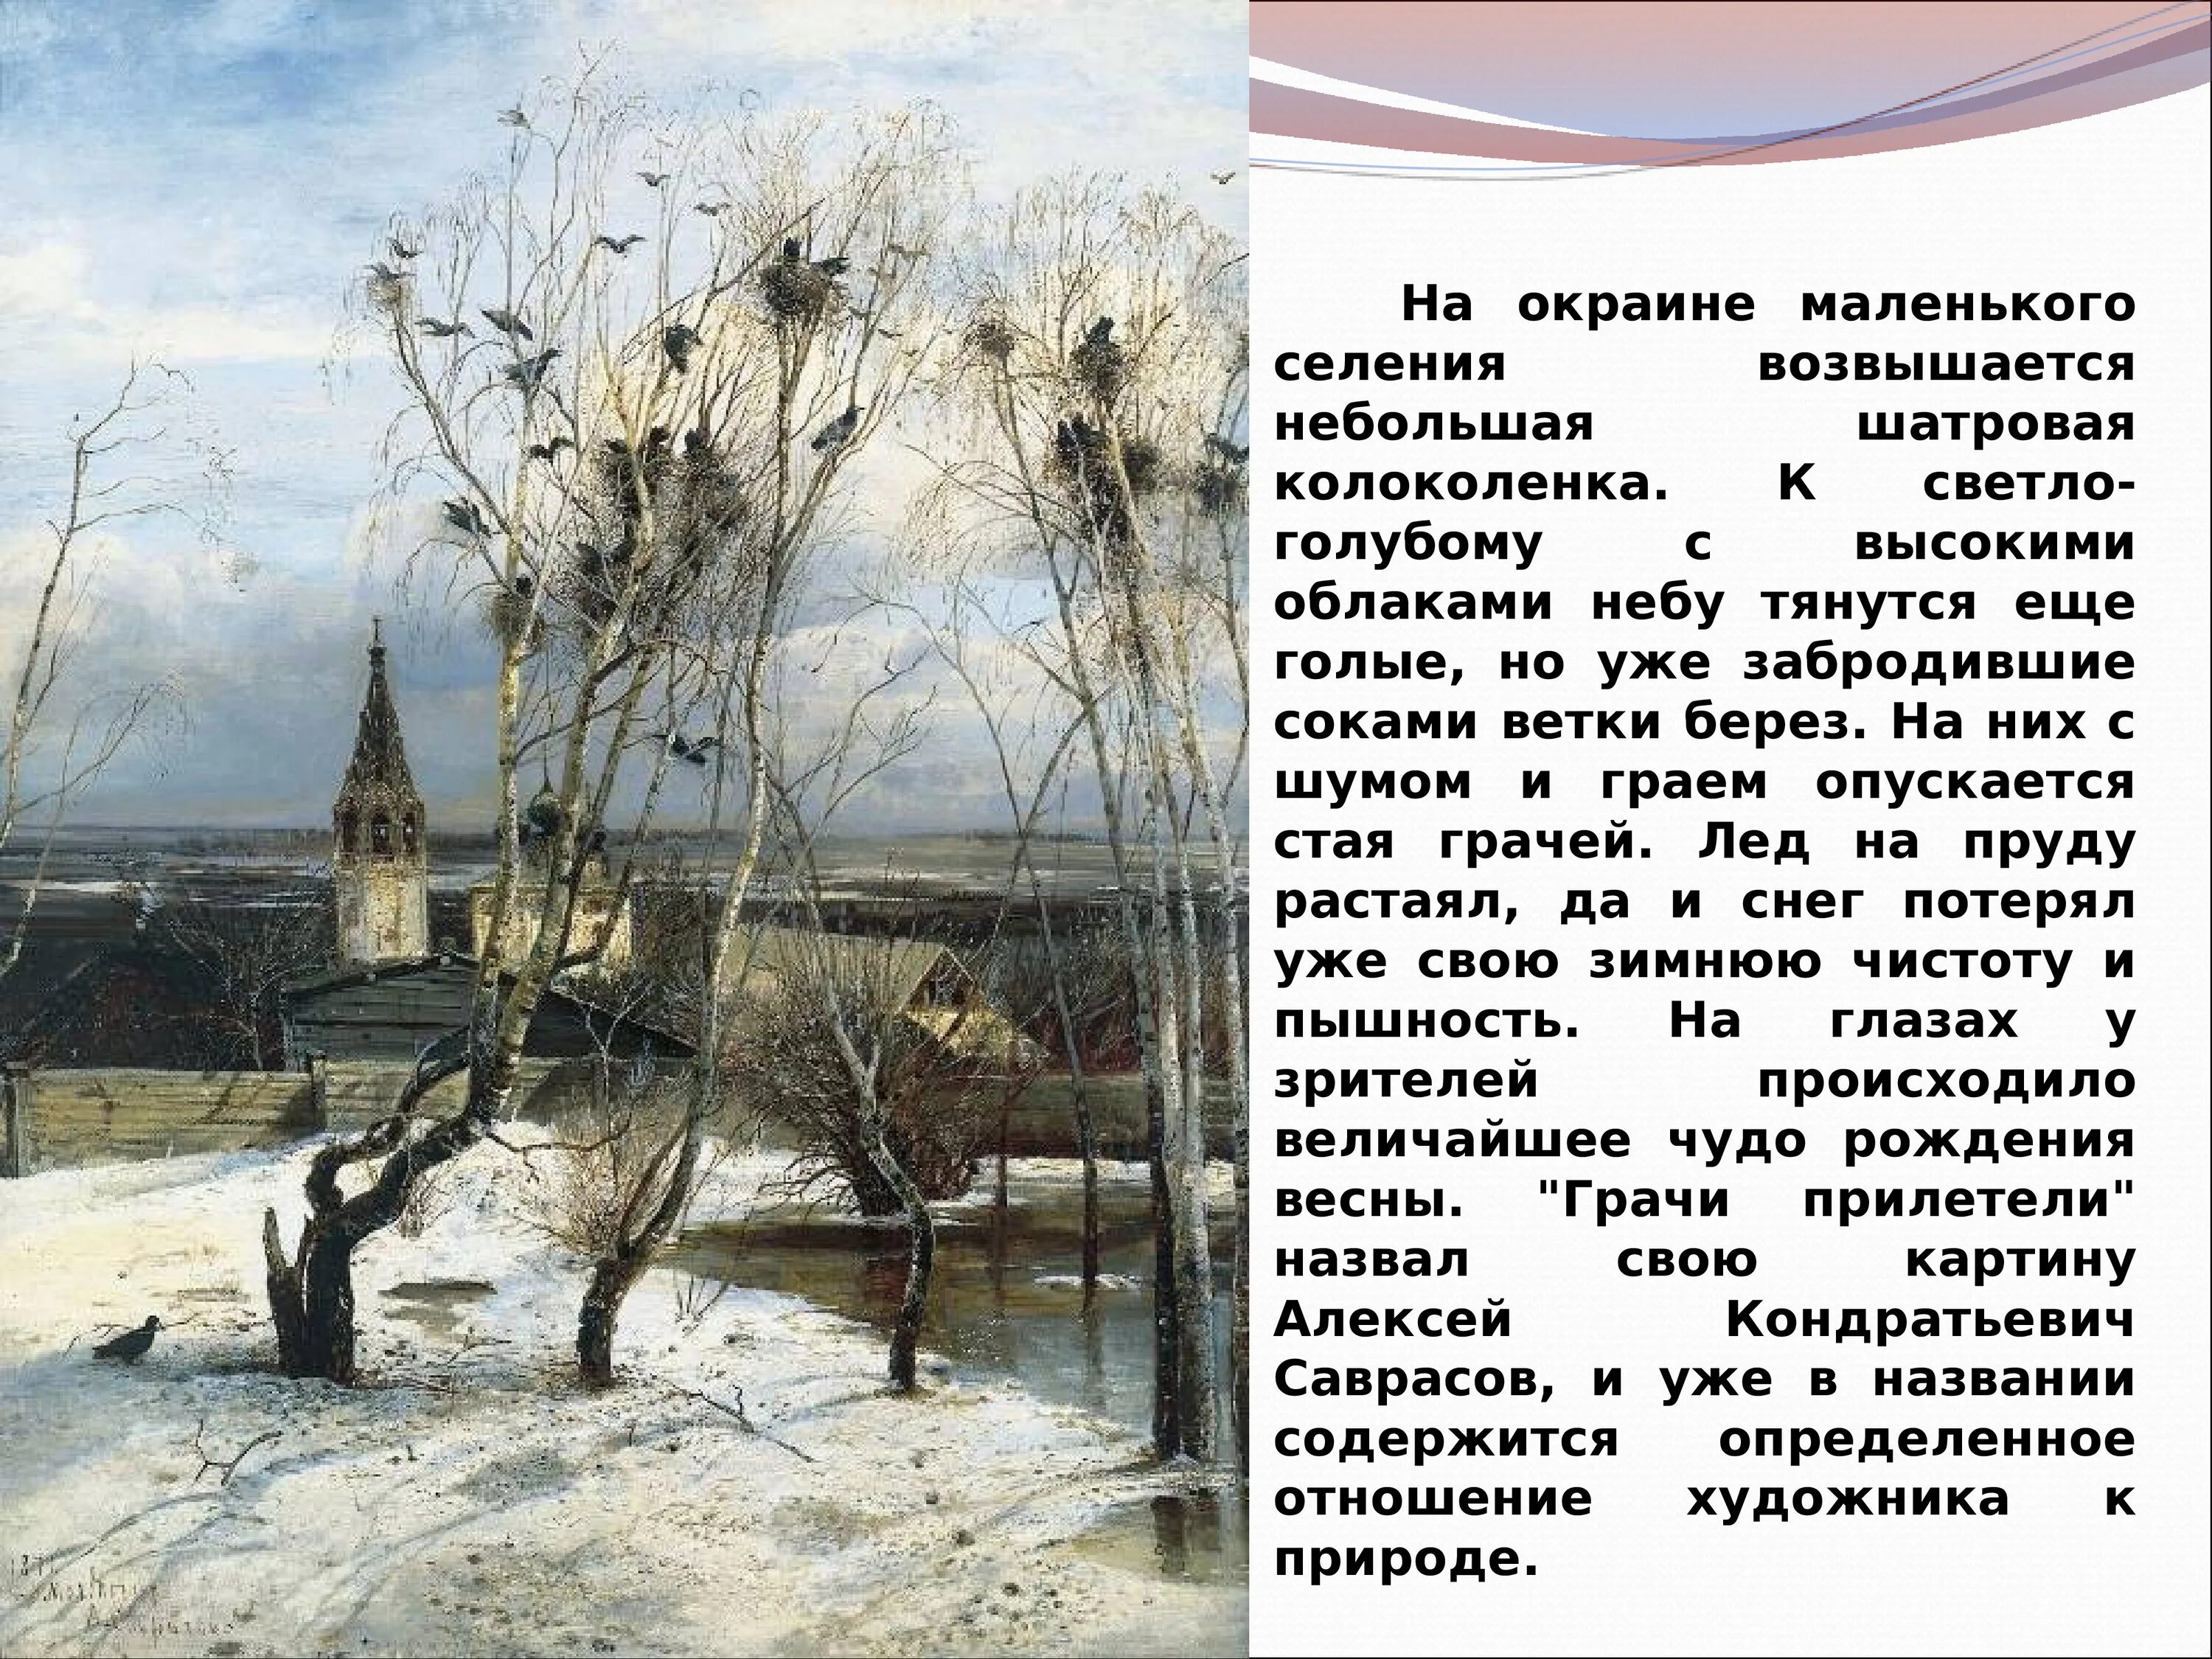 Признаки весны отраженные в произведениях писателей 2. Саврасов Грачи прилетели в живописи.